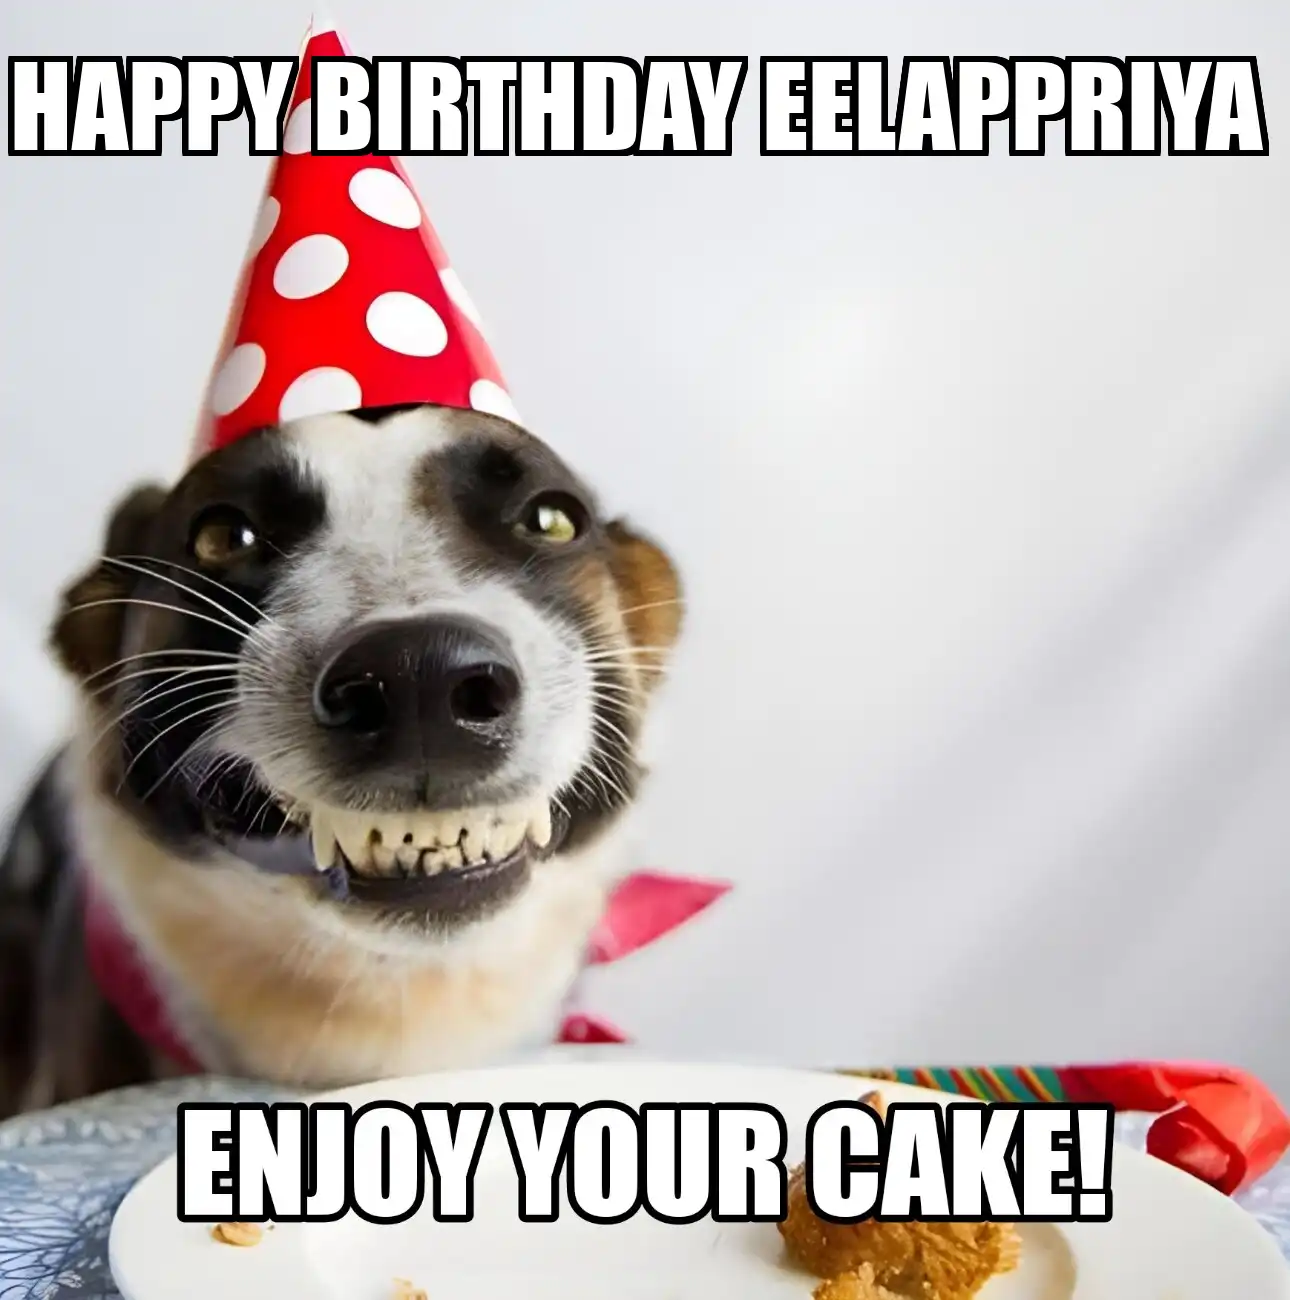 Happy Birthday Eelappriya Enjoy Your Cake Dog Meme